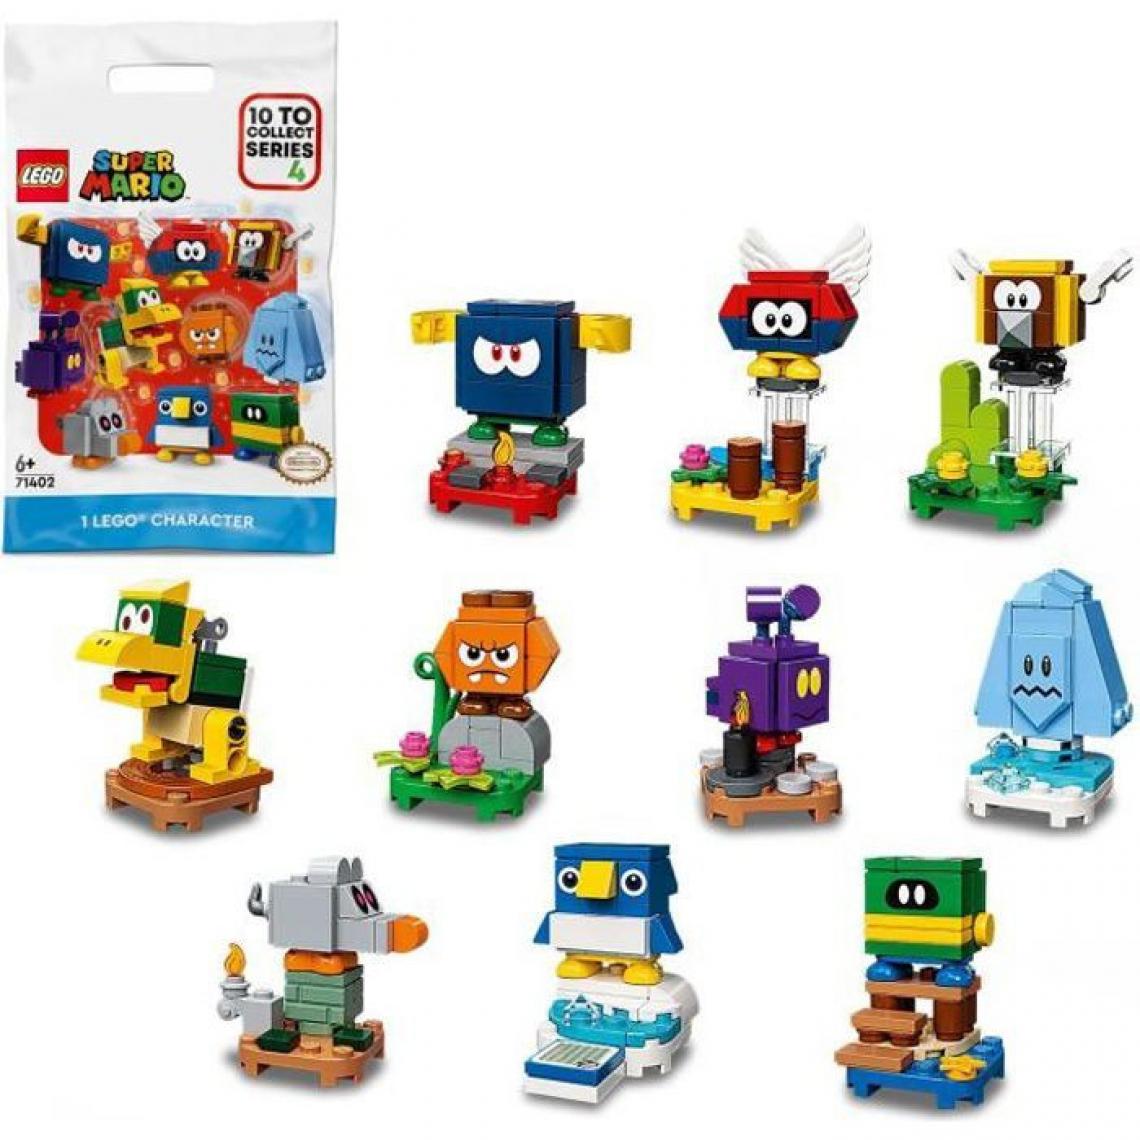 Lego - LEGO 71402 Super Mario Pack Surprise de Personnage - Série 4, Jouet a Collectionner avec Figurines, 1 Unité (Au Hasard) - Briques Lego